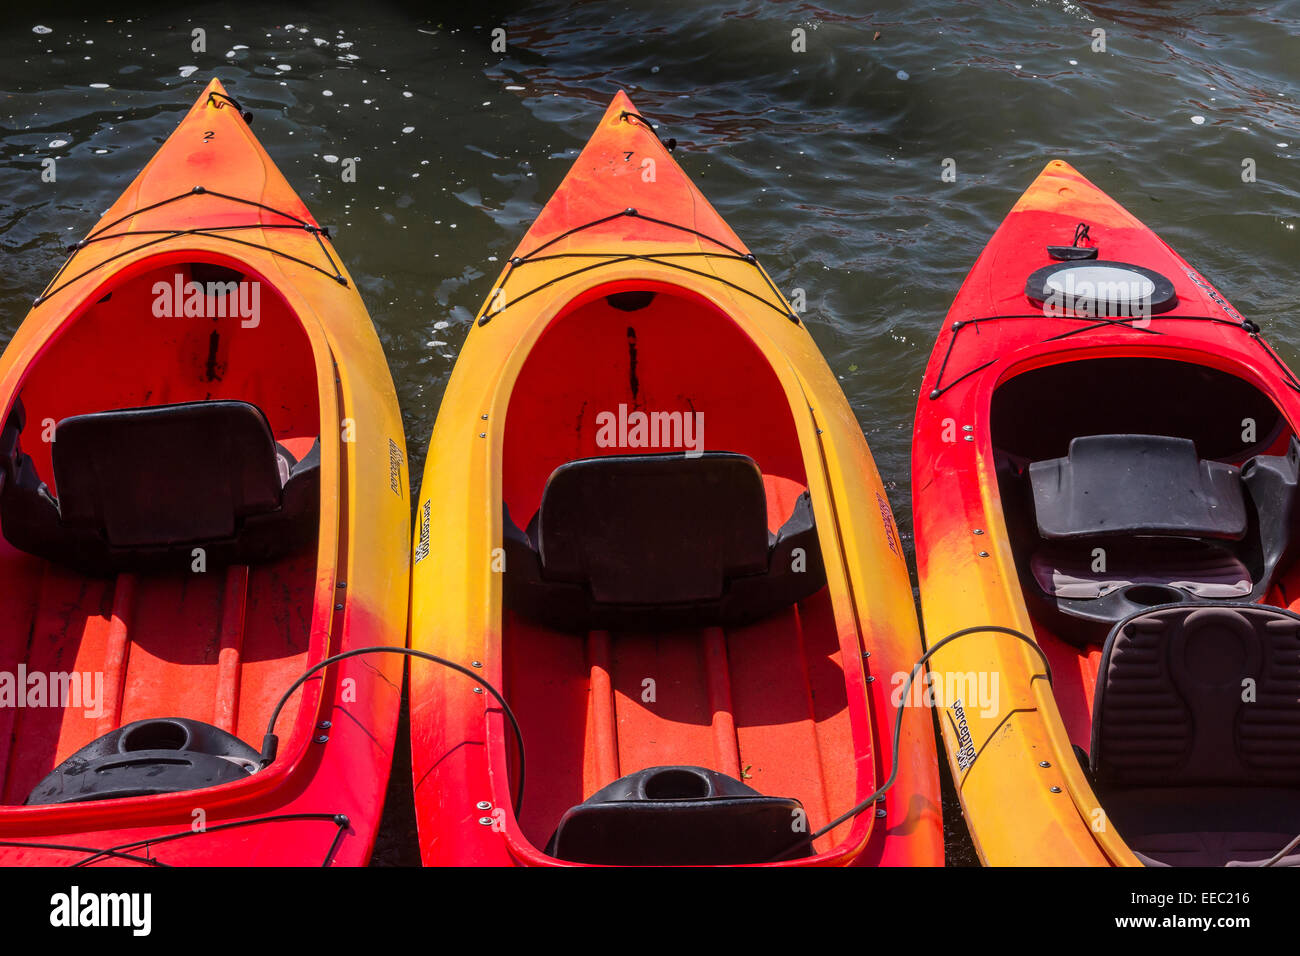 Une pourvoirie's kayaks le long de la rivière russe près de son embouchure dans l'océan Pacifique, Jenner, California, USA Banque D'Images